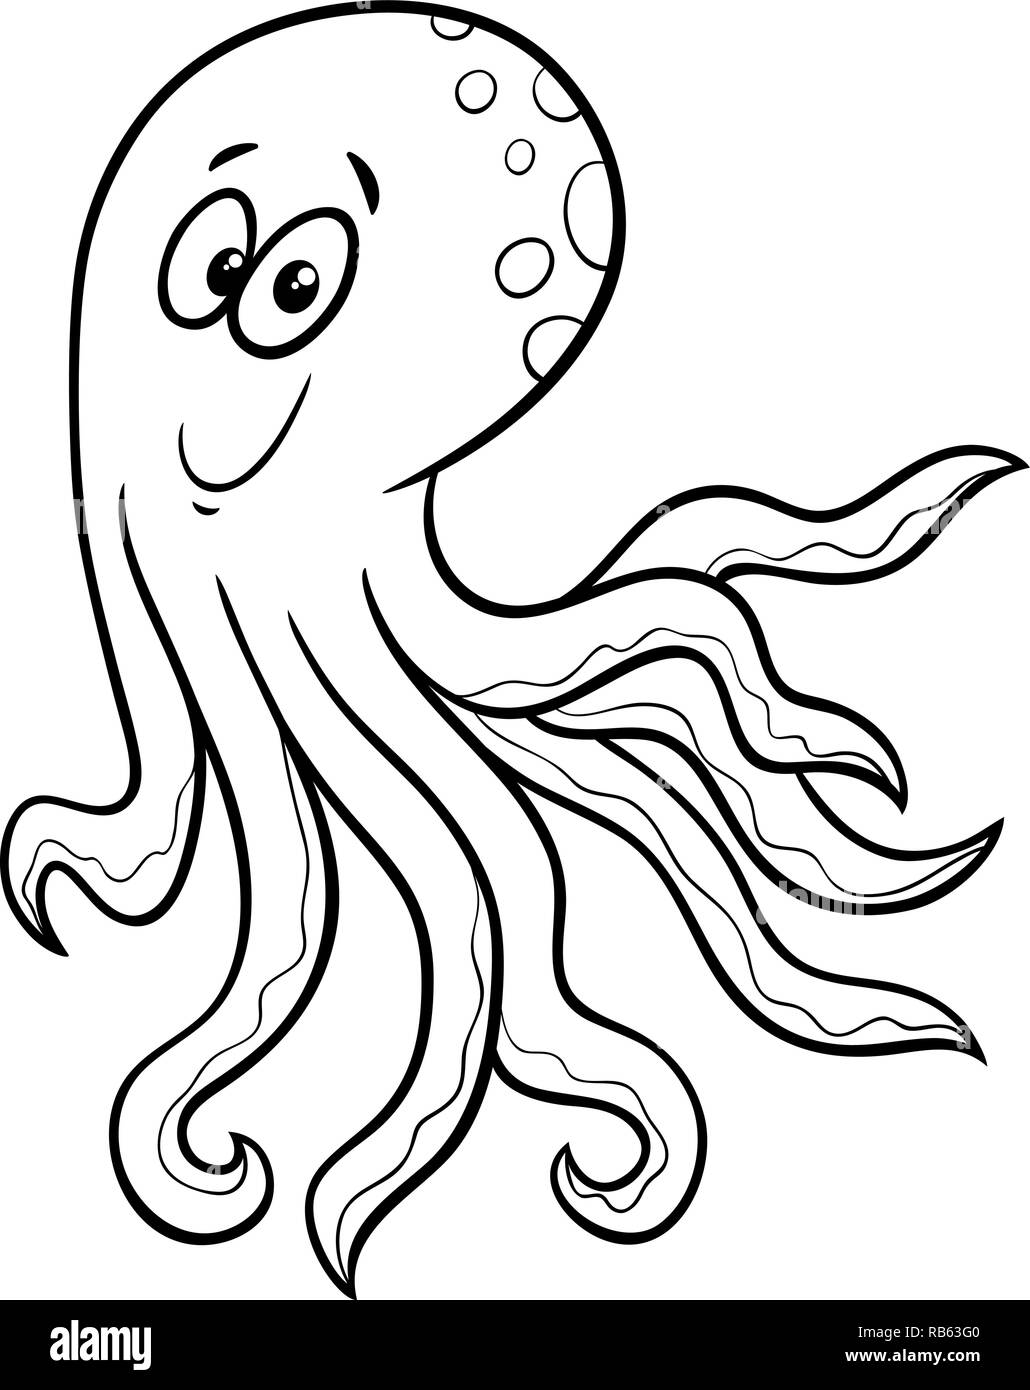 Cartoon noir et blanc Illustration de poulpe drôle personnage animal mer Coloring Book Illustration de Vecteur